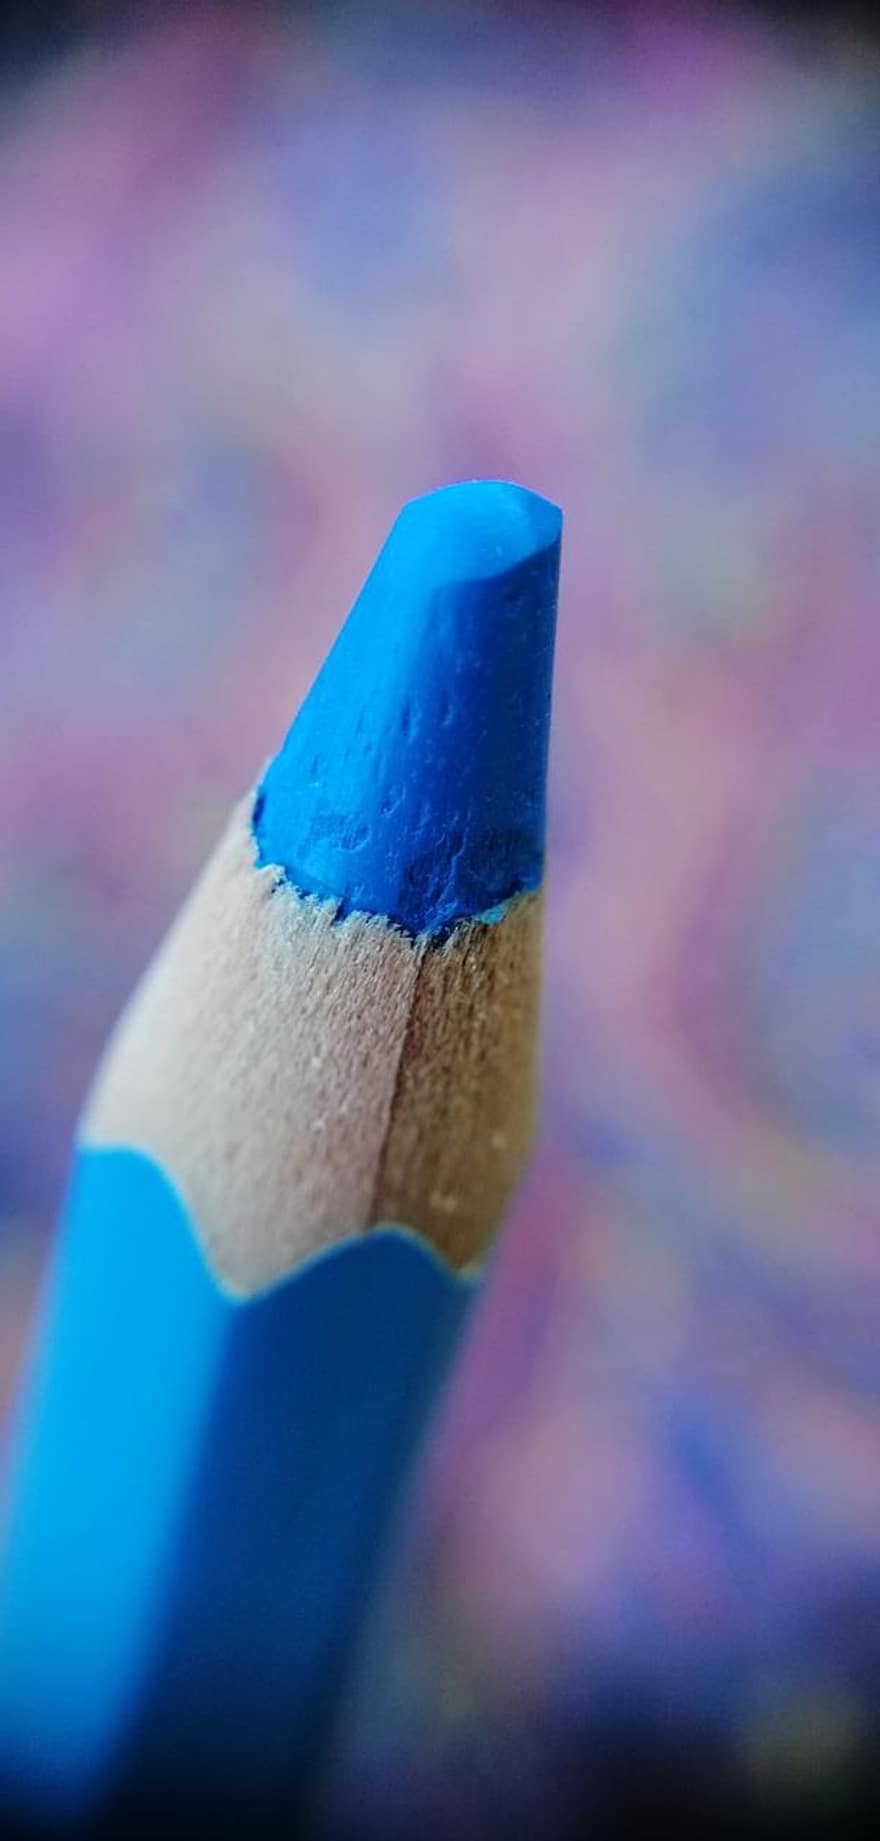 pastello, matita blu, matita di colore blu, blu, arti e mestieri, forniture d'arte, materiale colorante, colorazione, macrofotografia, bokeh